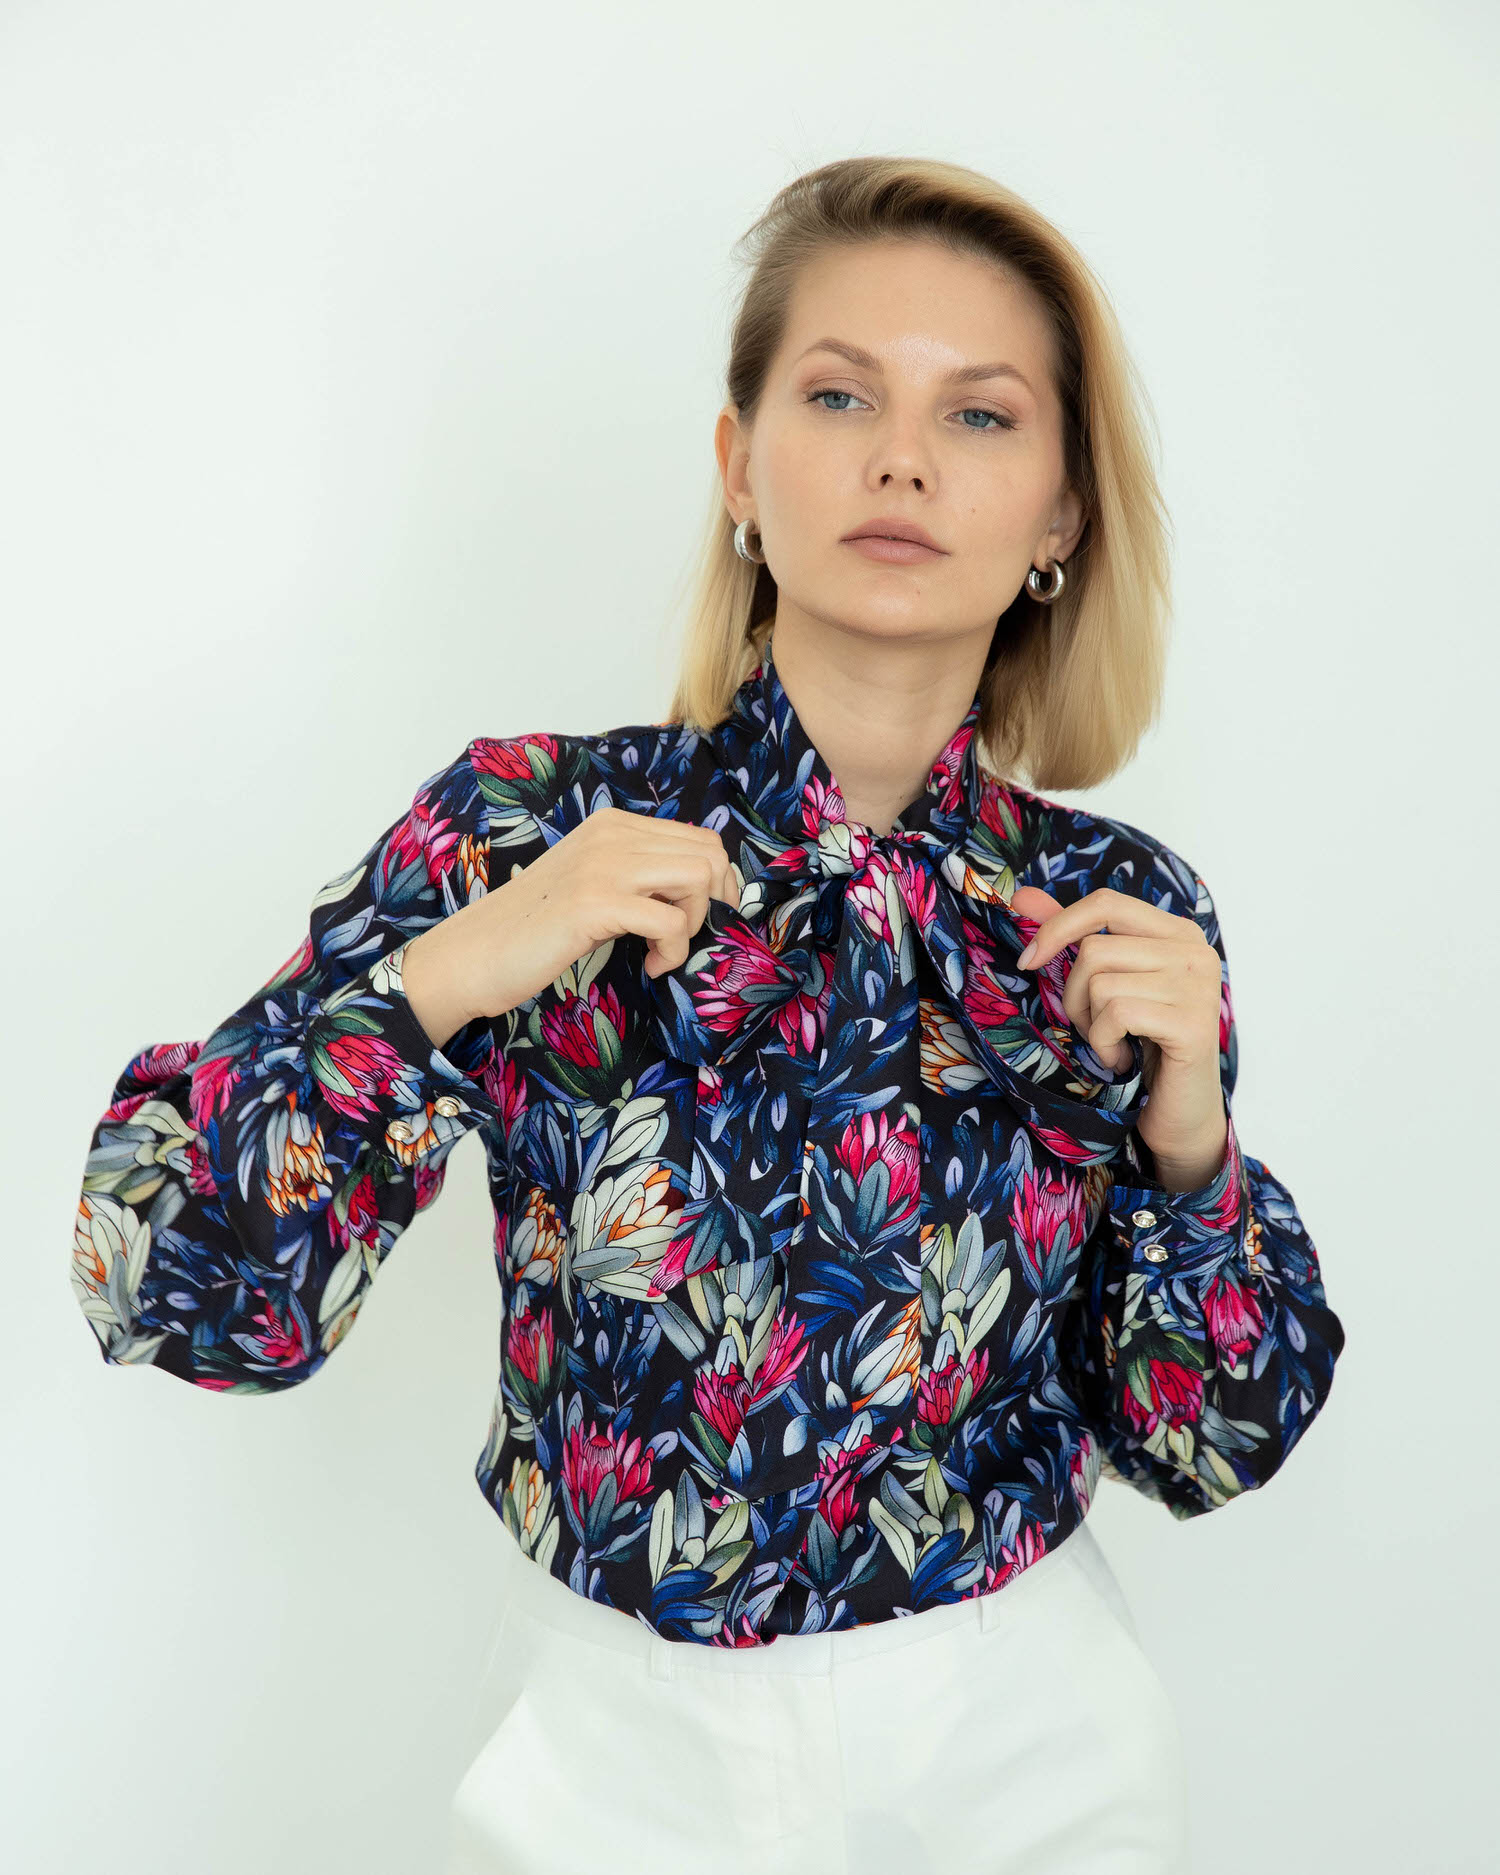 Женская блузка с бантом принт протеи - 8275 от ByME 